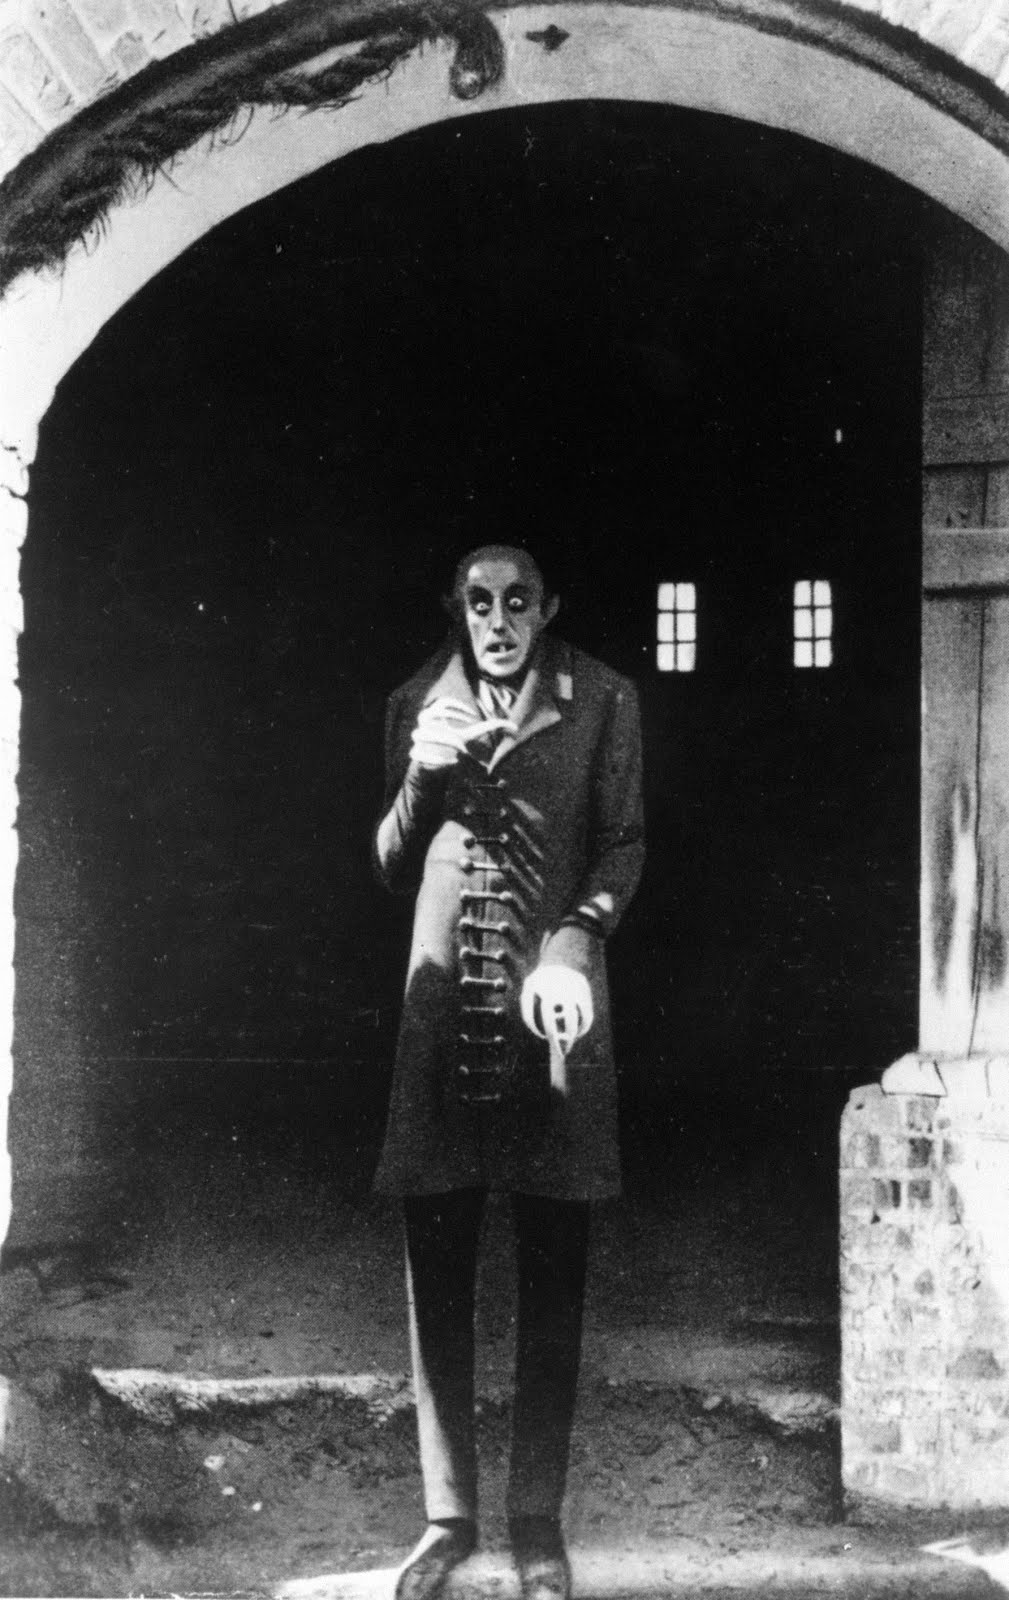 1922 Nosferatu